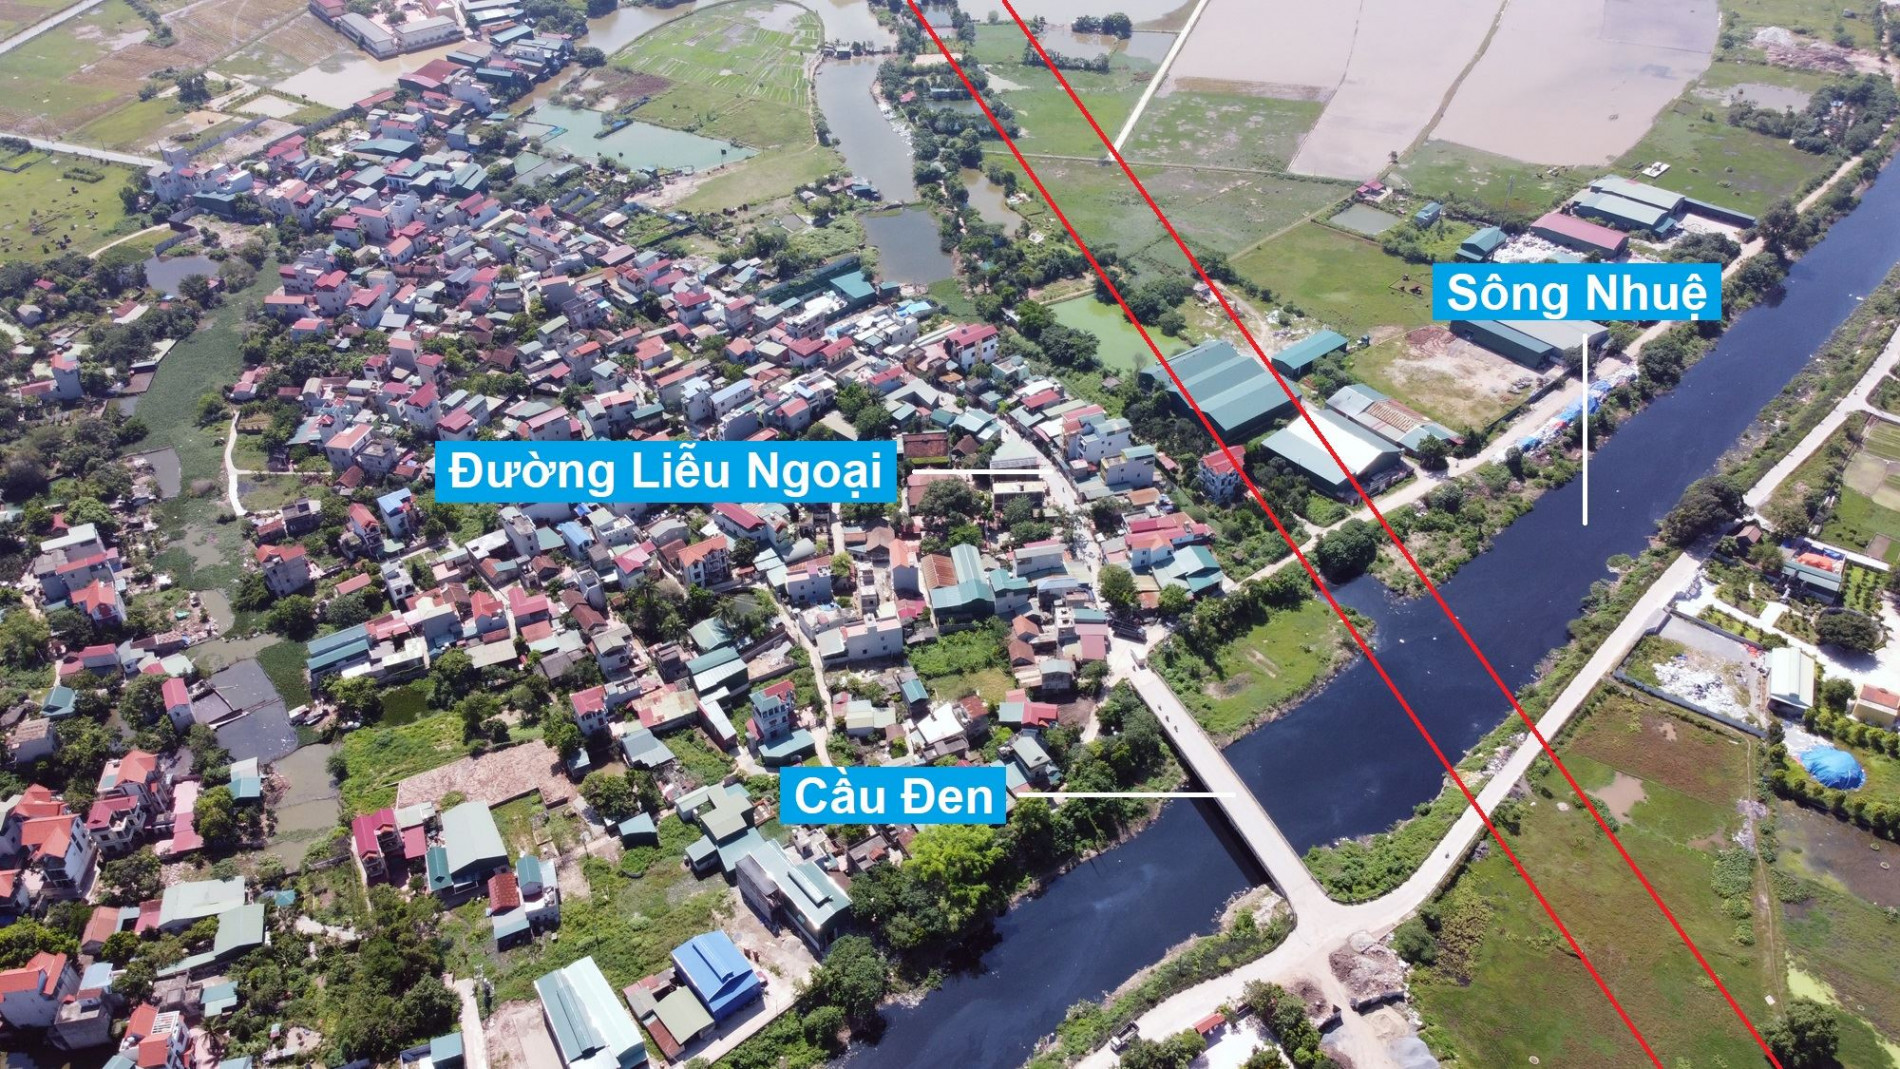 Đường Vành đai 4 sẽ mở theo quy hoạch qua huyện Thường Tín, Hà Nội